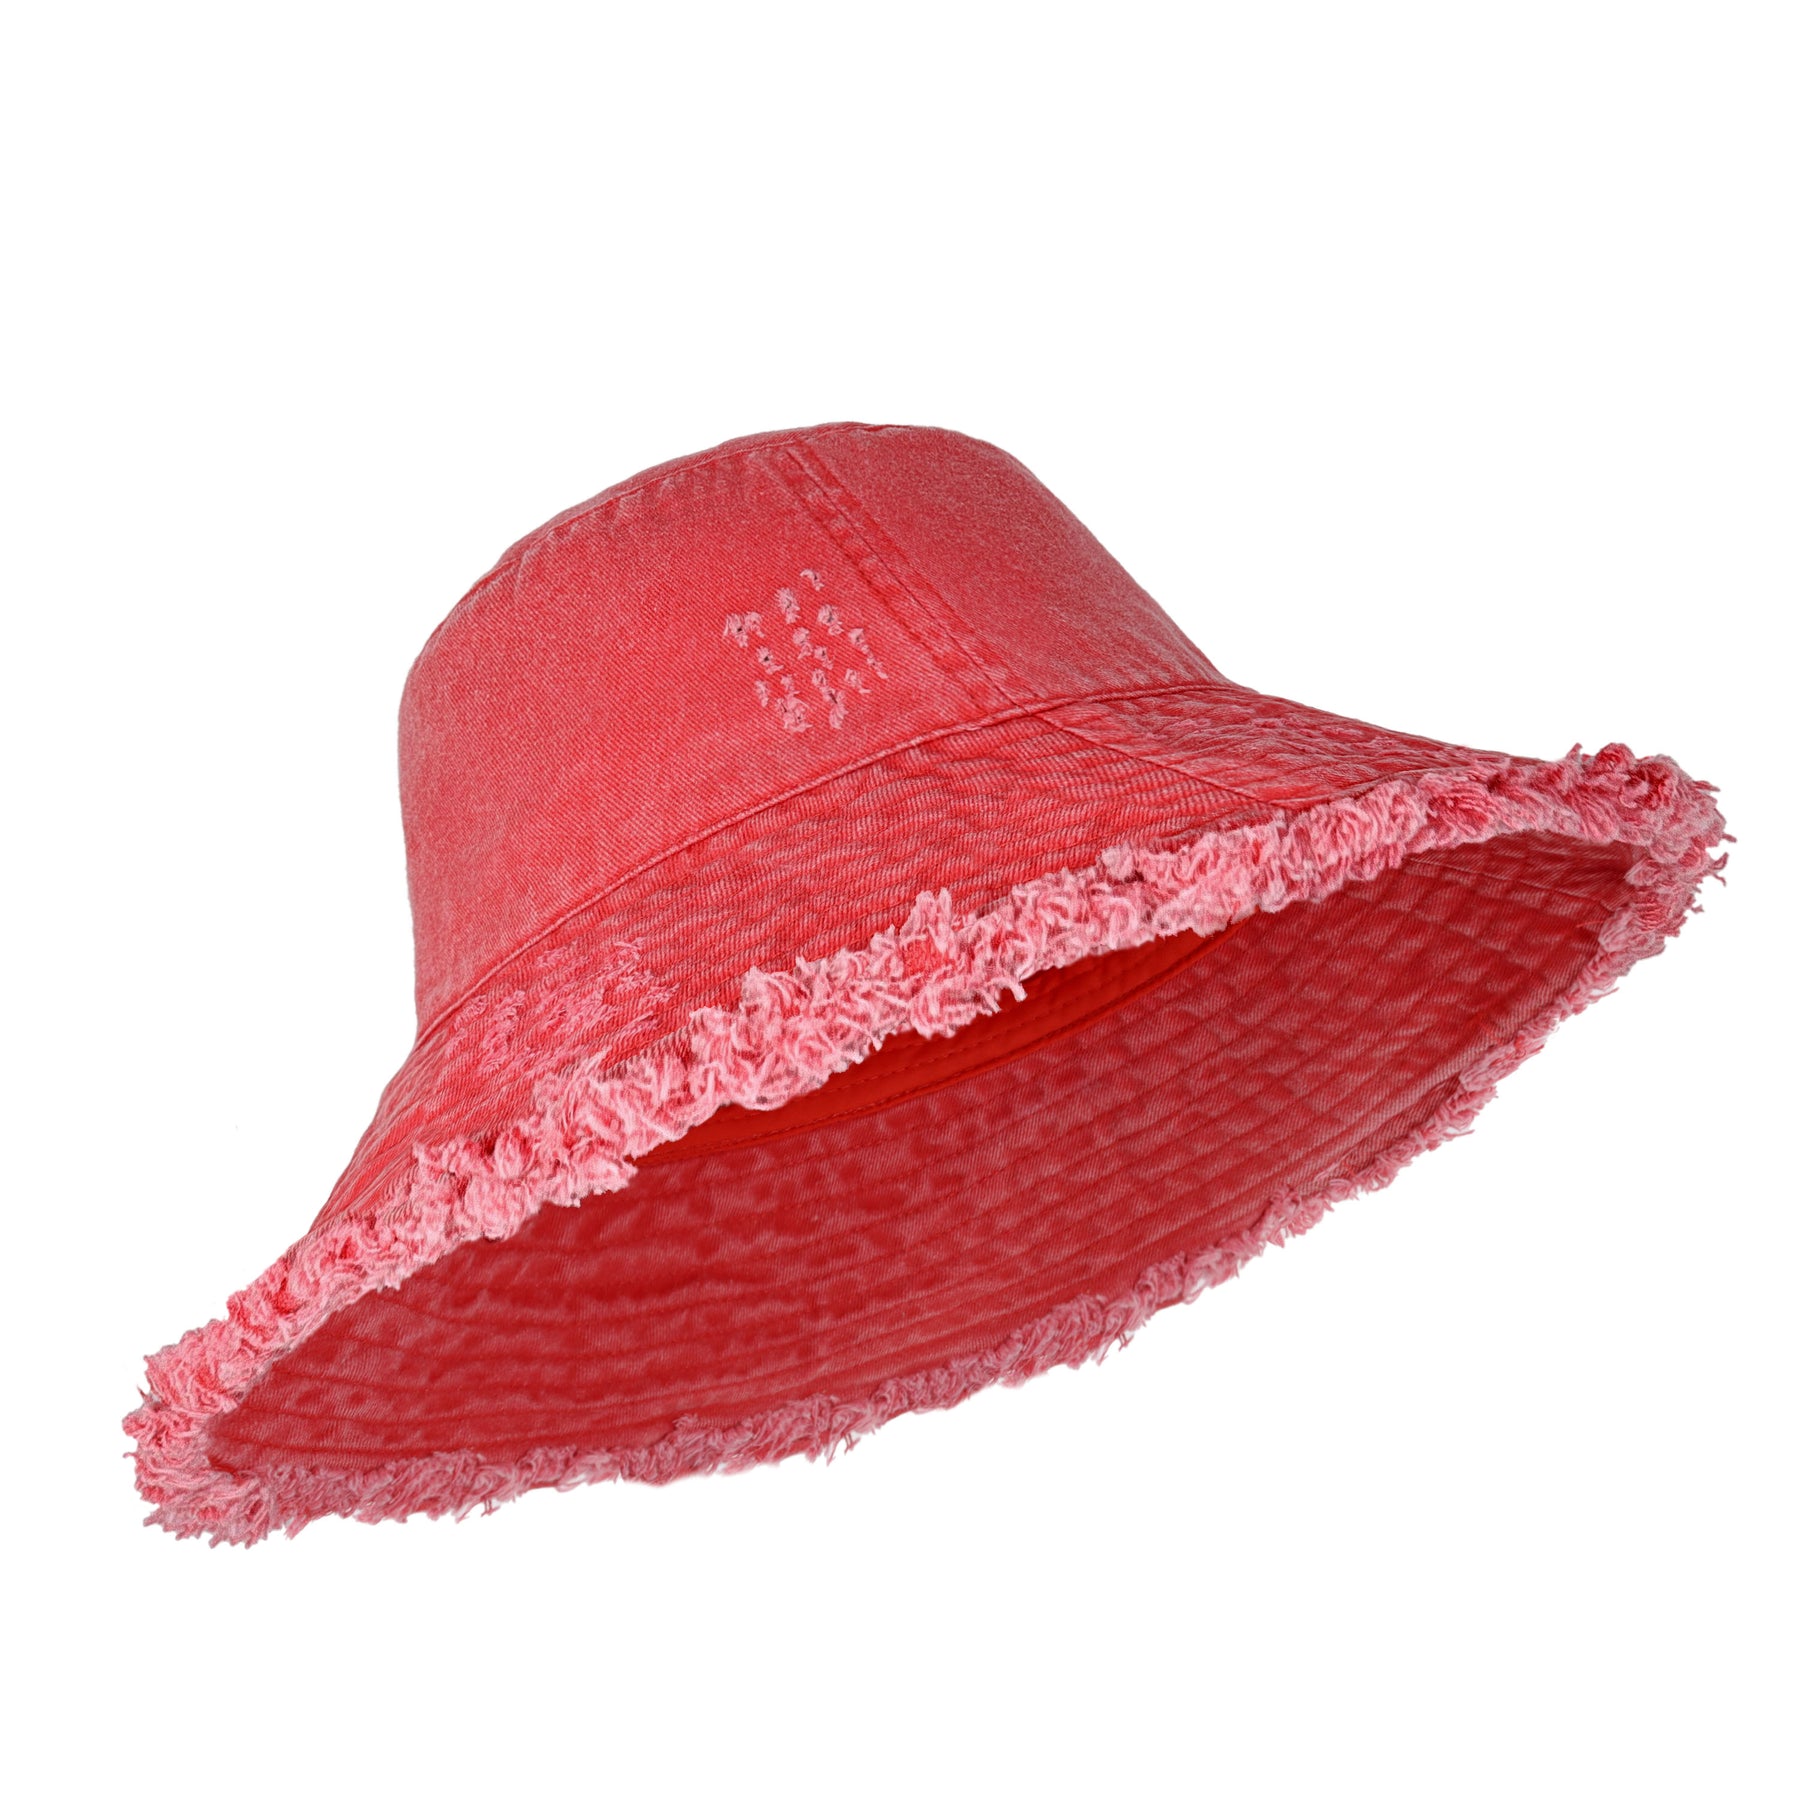 Wide Brim Frayed Bucket Hat